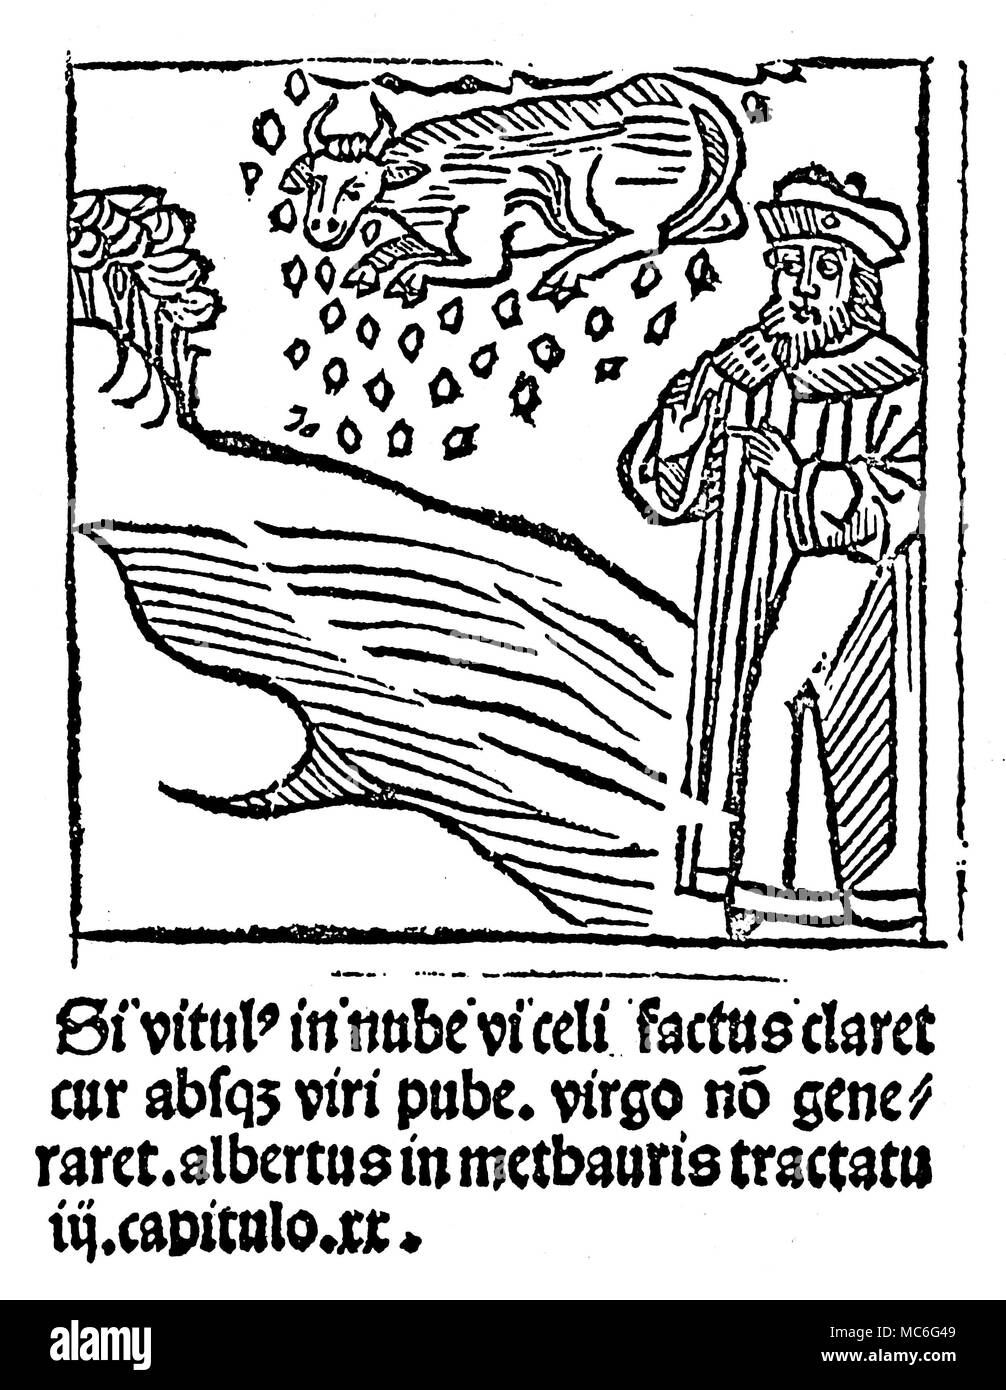 Merkwürdige Phänomene - CLOUD-Kalb das 'Wunder' einer wie ein Kalb in den Wolken [und fallen vom Himmel geboren werden können, wie Schnee]. Der Holzschnitt, illustriert dieses Wunder, ist ein visuelles Argument, wenn es dann passieren kann, warum sollte nicht das Wunder der Jungfrauengeburt auch auftreten. Holzschnitt aus Franciscus de Retza, Defensorium inviolatae virginitas Mariae, Ende des 15. Jahrhunderts. Stockfoto